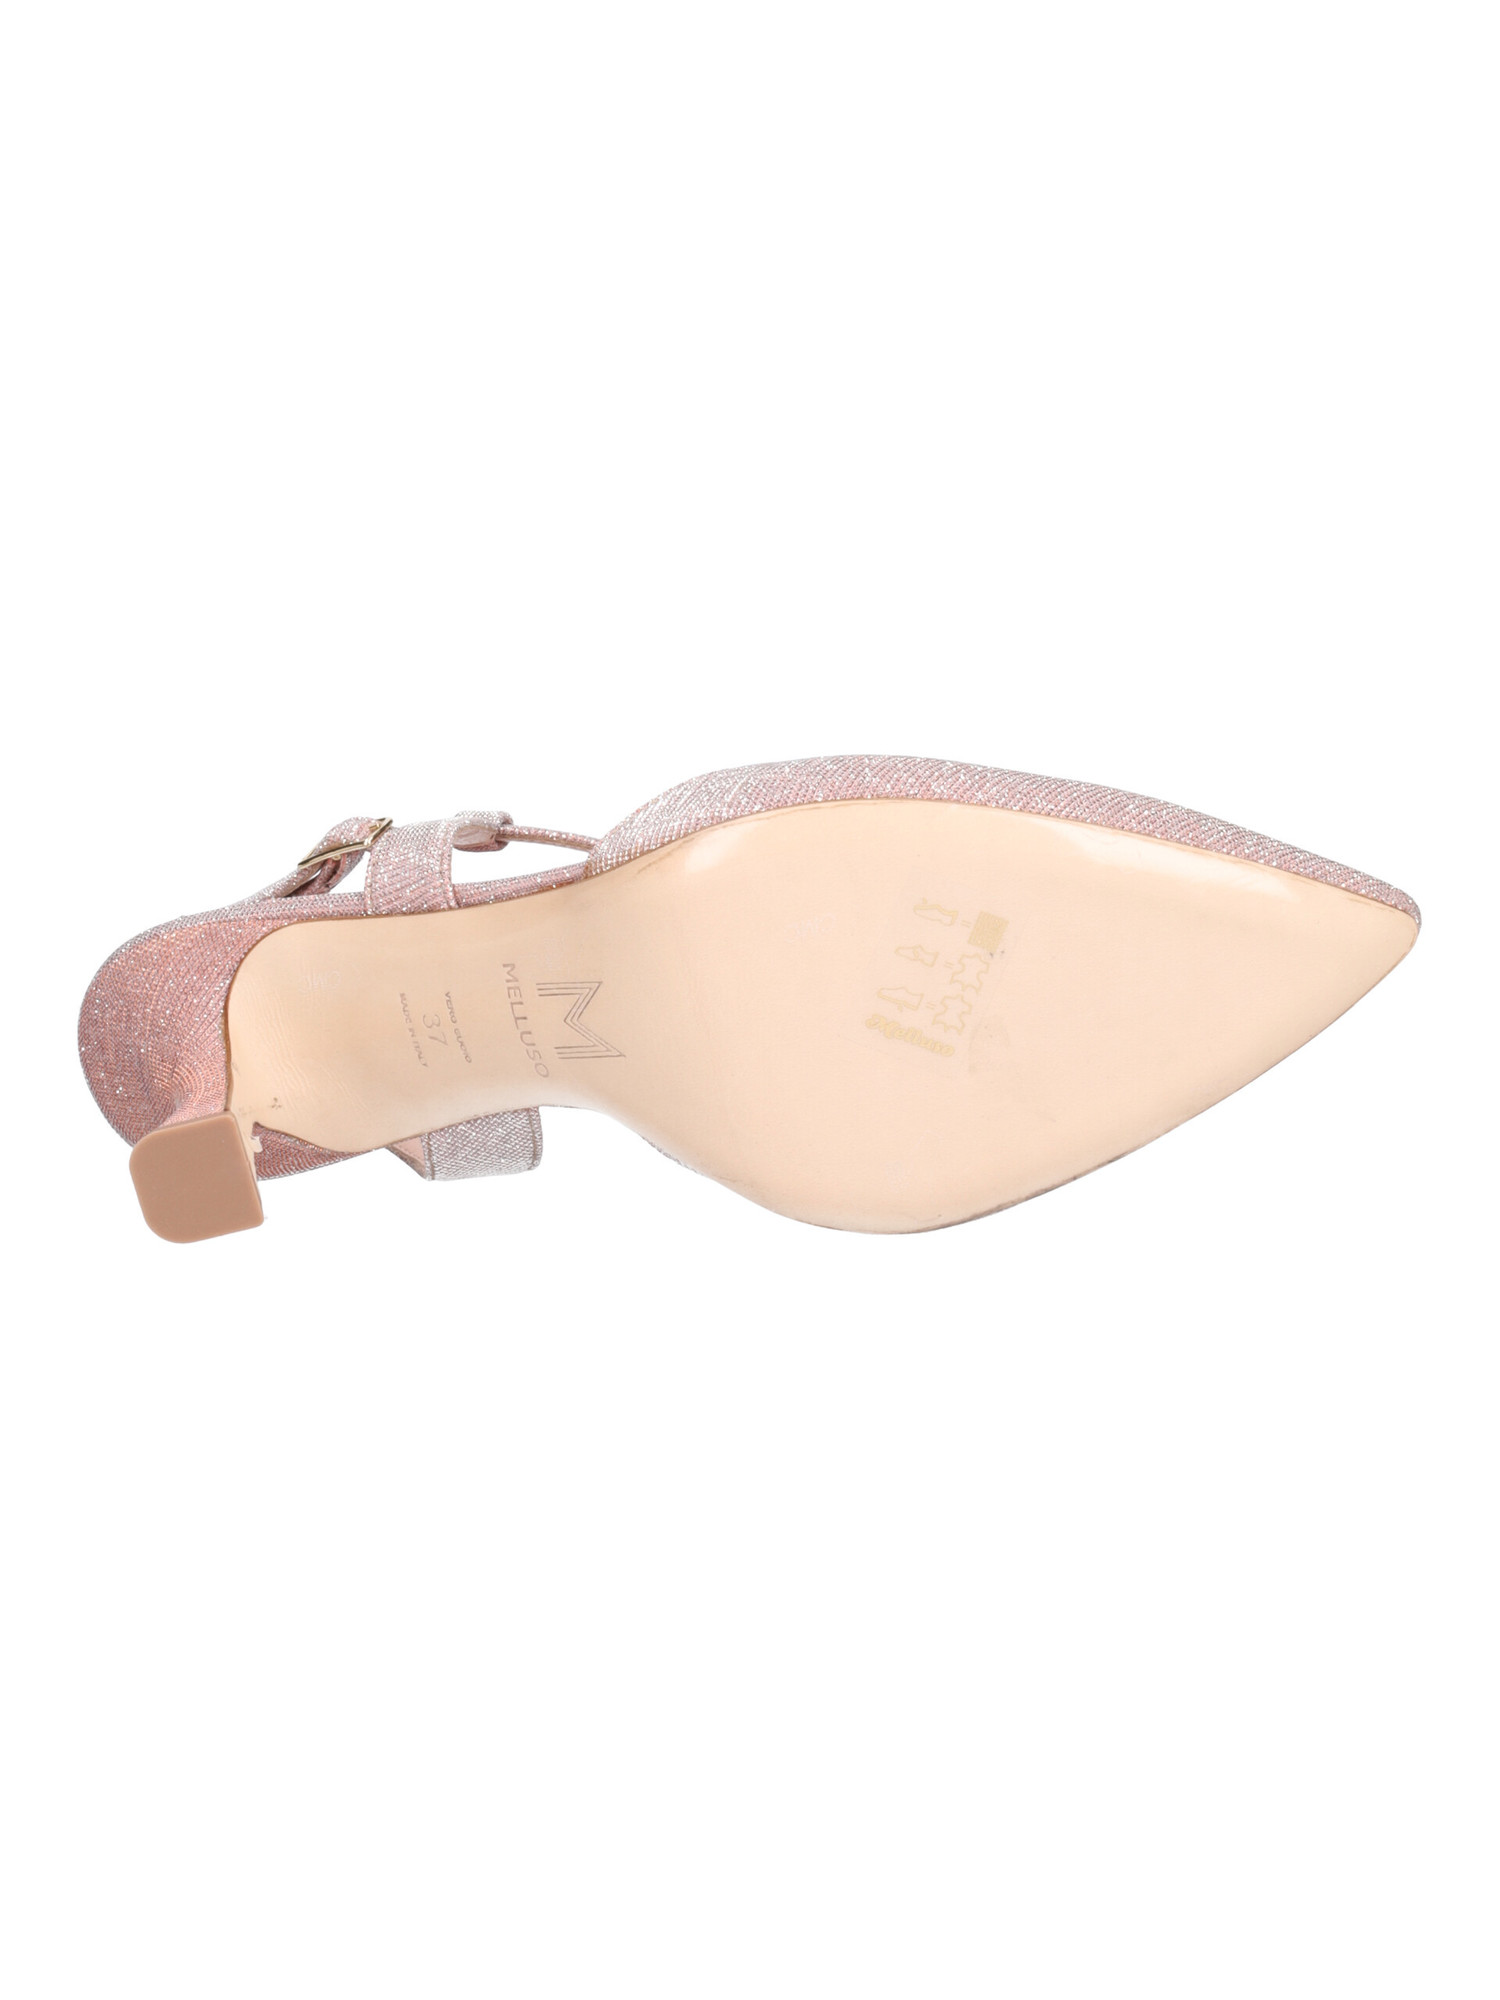 scarpa-elegante-con-tacco-fino-melluso-da-donna-rosa-glitter